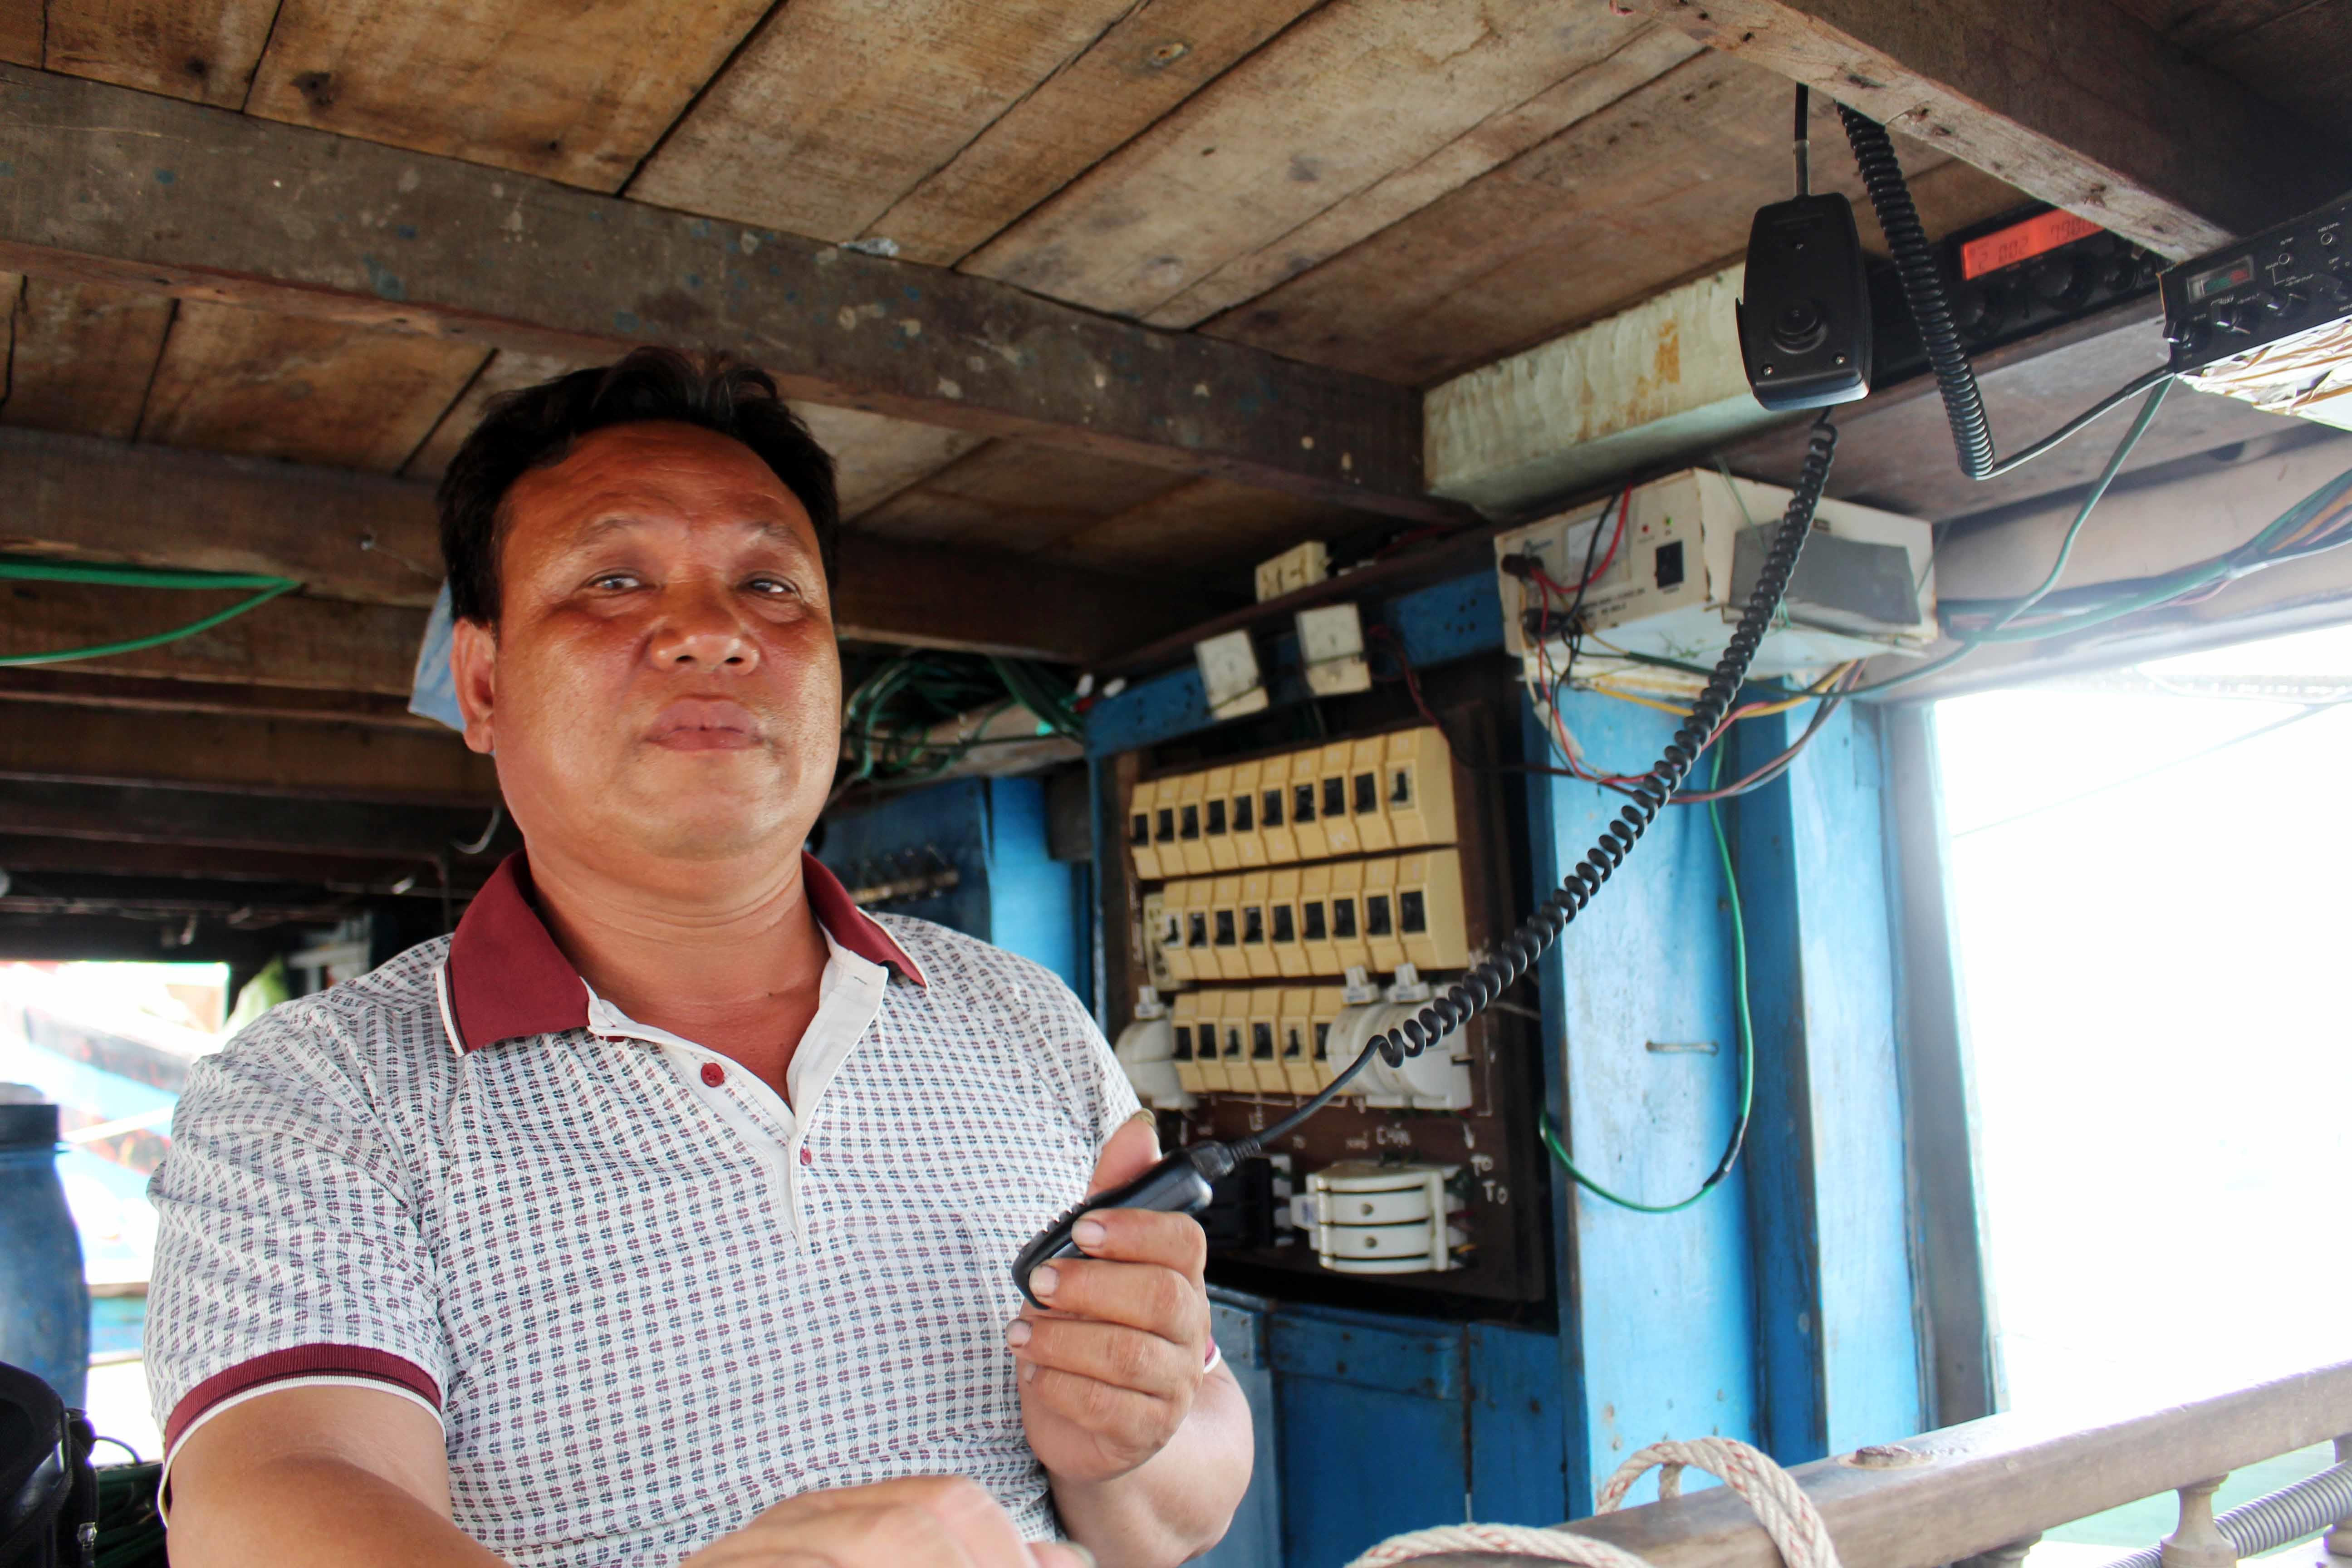 Ngư dân Đồng Văn Mạnh ở xã Sơn Hải, huyện Quỳnh Lưu đánh bắt hải sản hiệu quả hơn nhờ lắp đặt các thiết bị liên lạc và máy dò cá. Ảnh: Việt Hùng